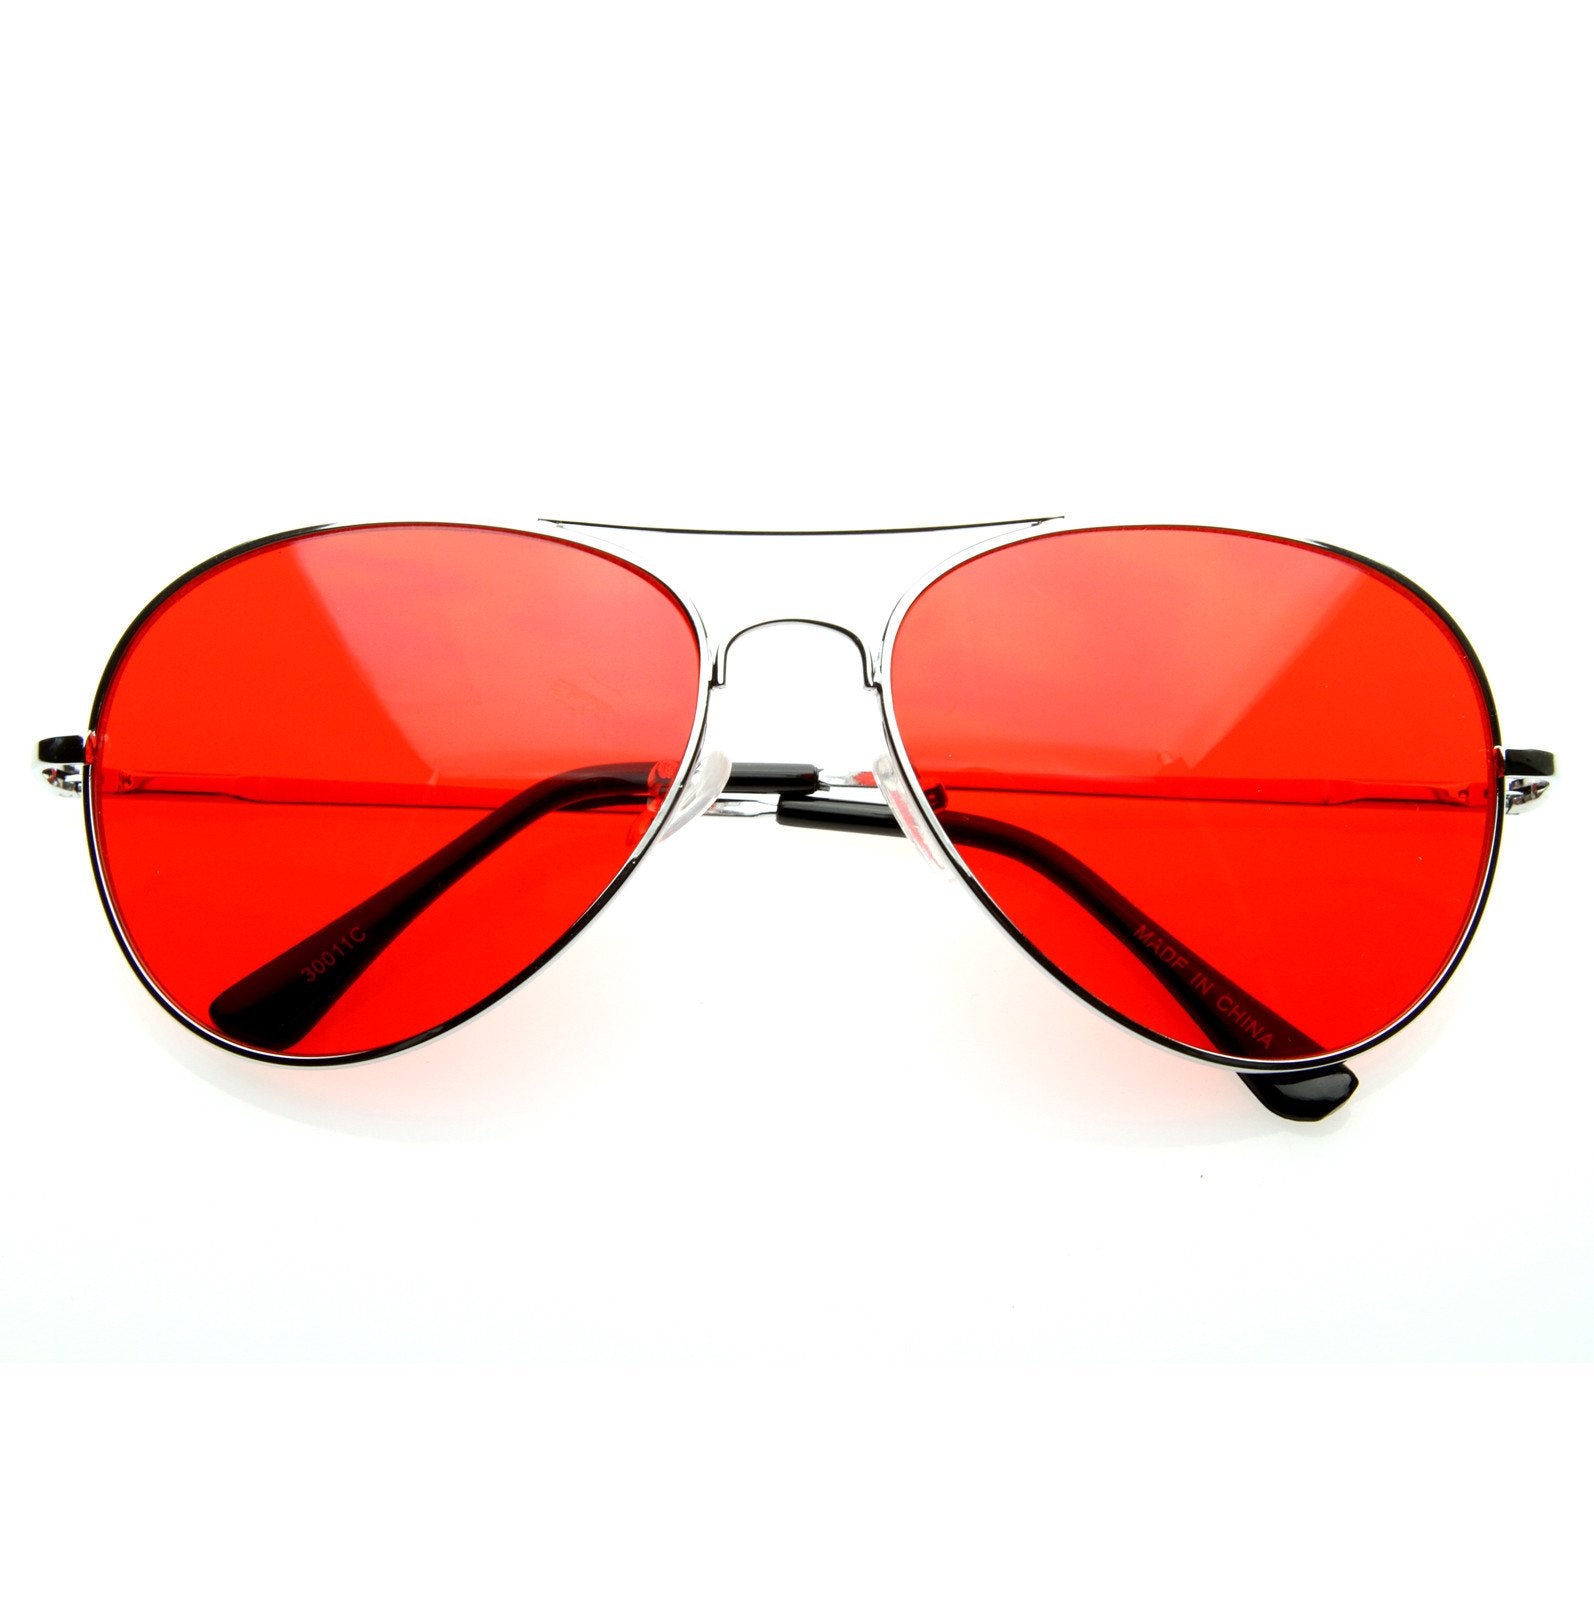 Sunglasses очки солнцезащитные. Очки Авиаторы ray ban красные. Очки ray ban ретро. Очки пилоты ray ban. Очки ray ban цветные.